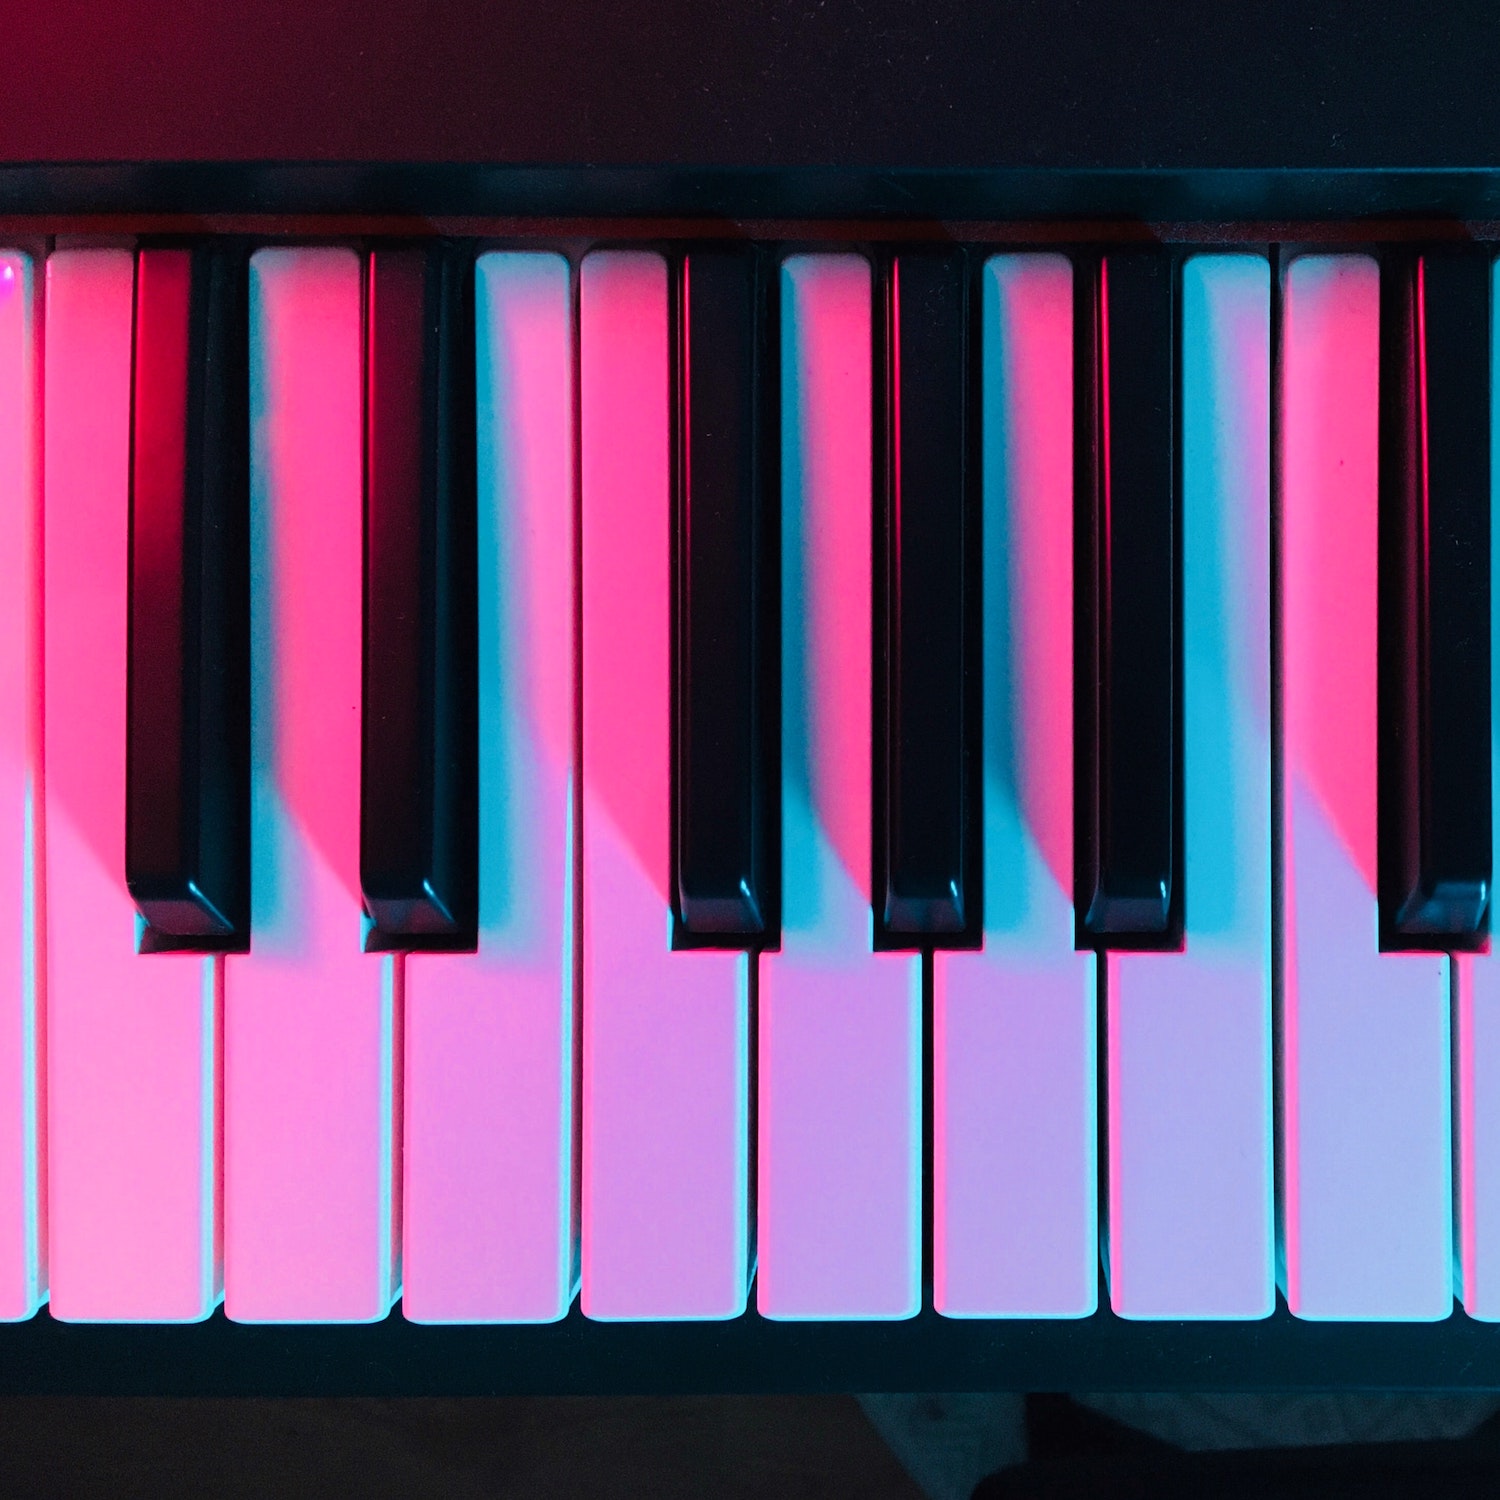 Are MIDI Piano Lessons Effective?